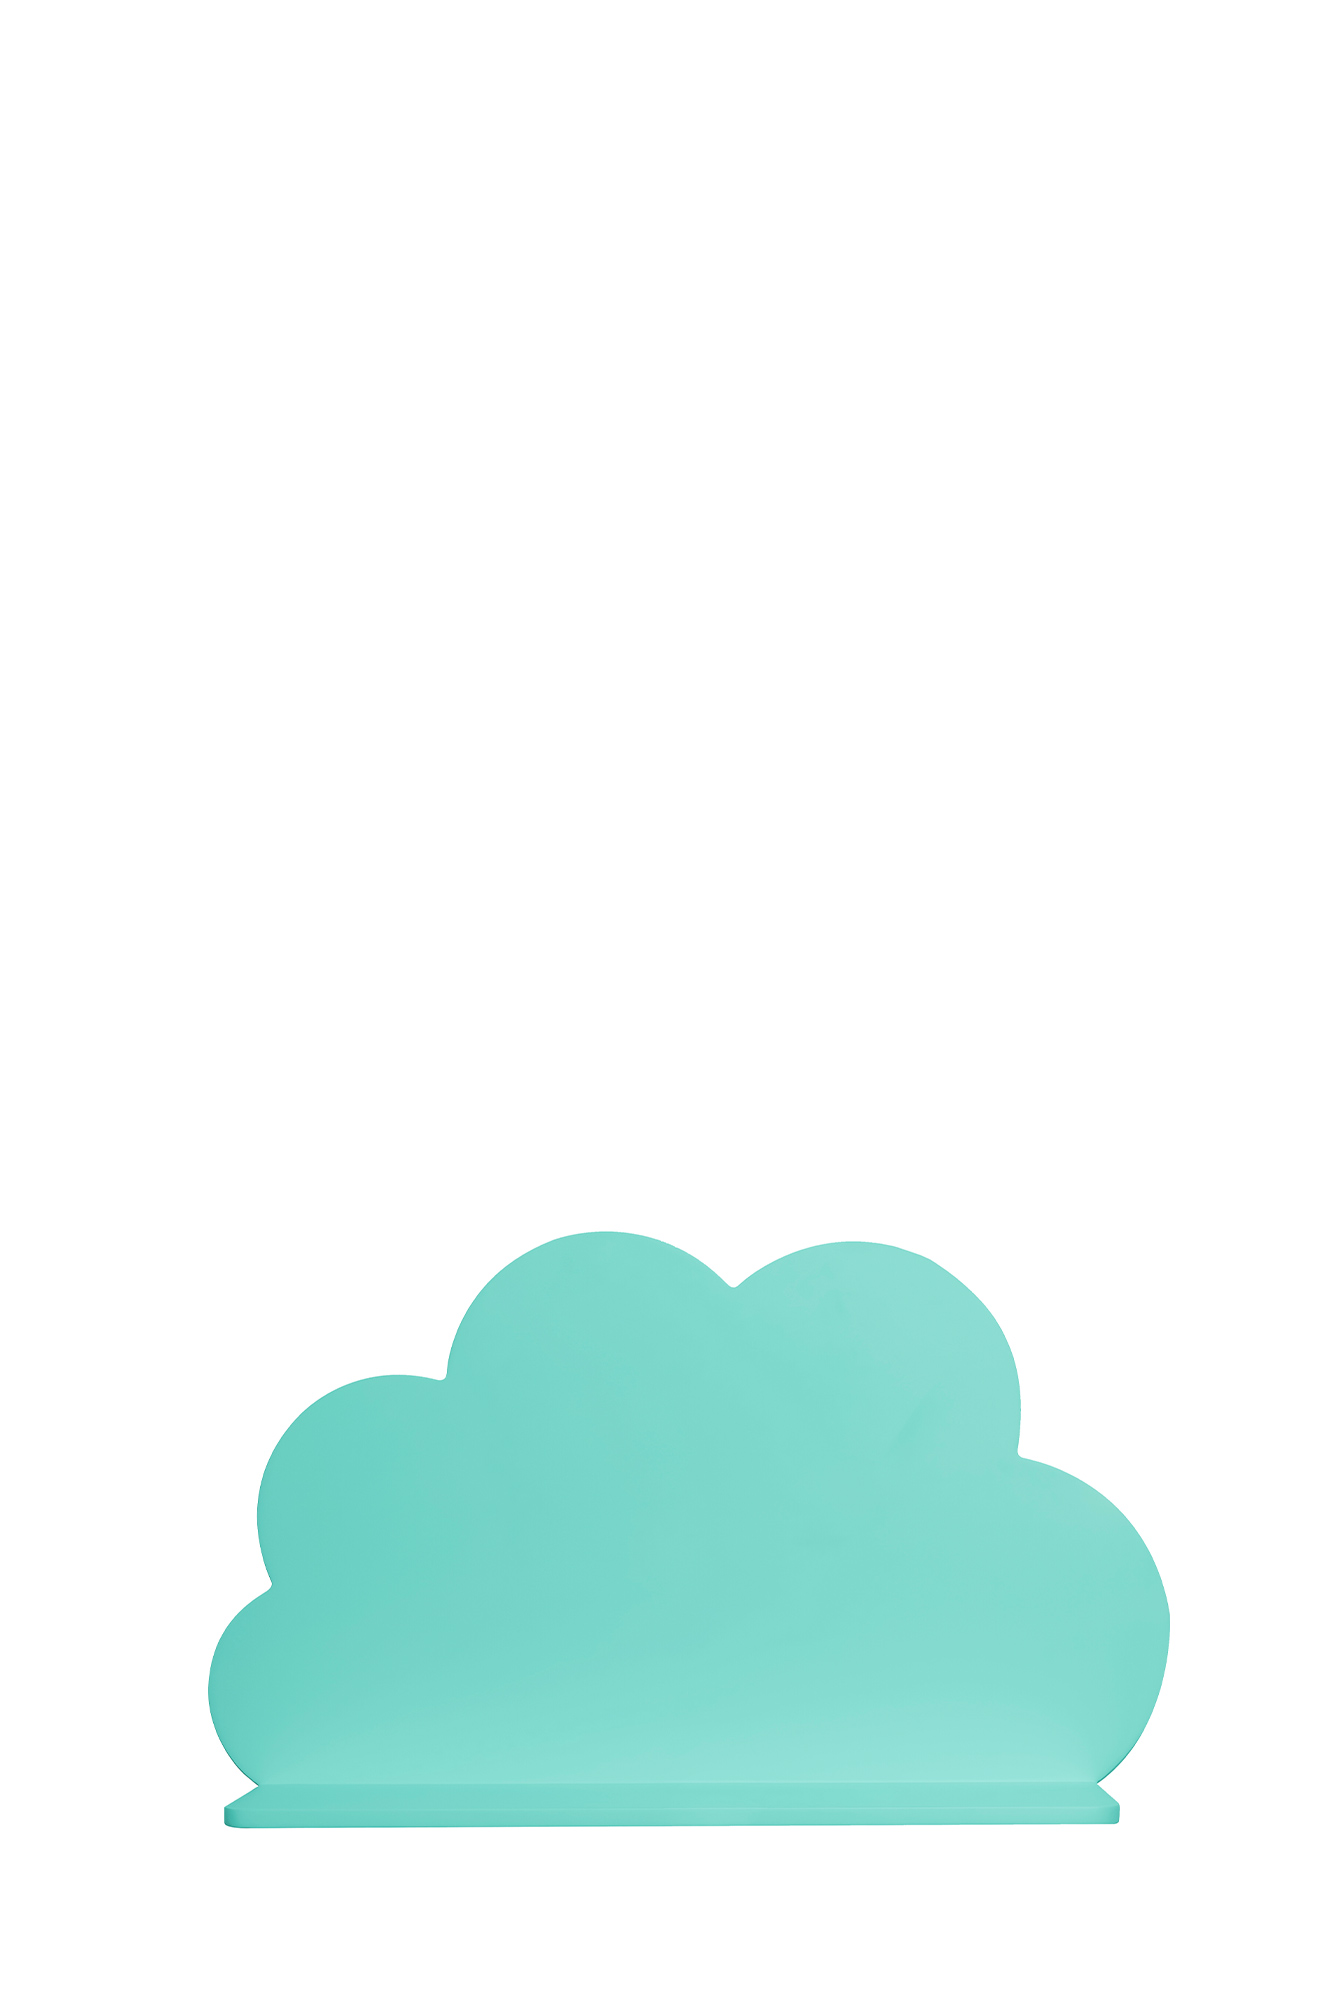 شلف ابری کوچک (آبی فیروزه ای)